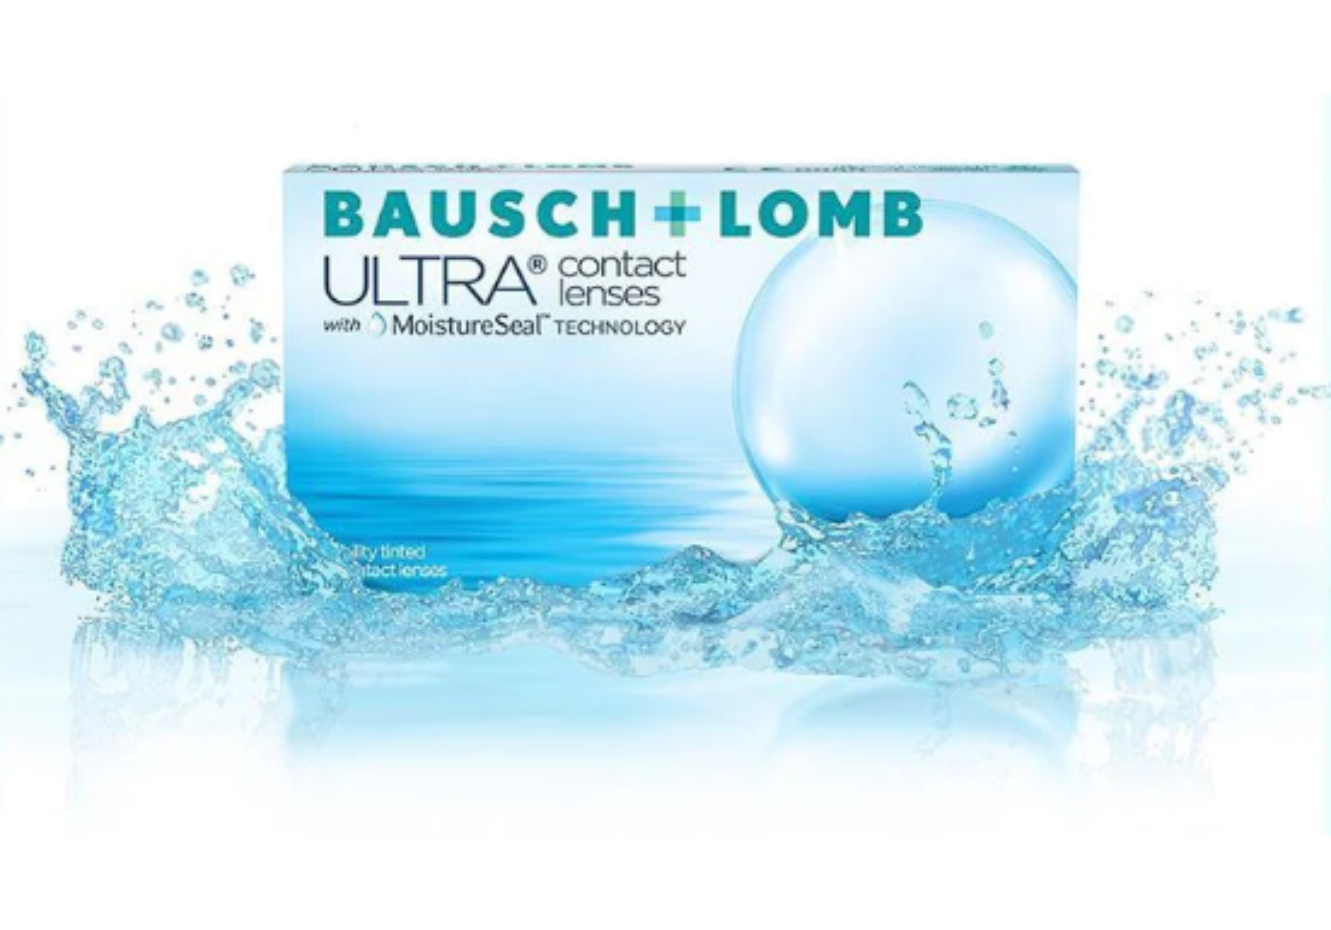 Ultra Bausch + Lomb